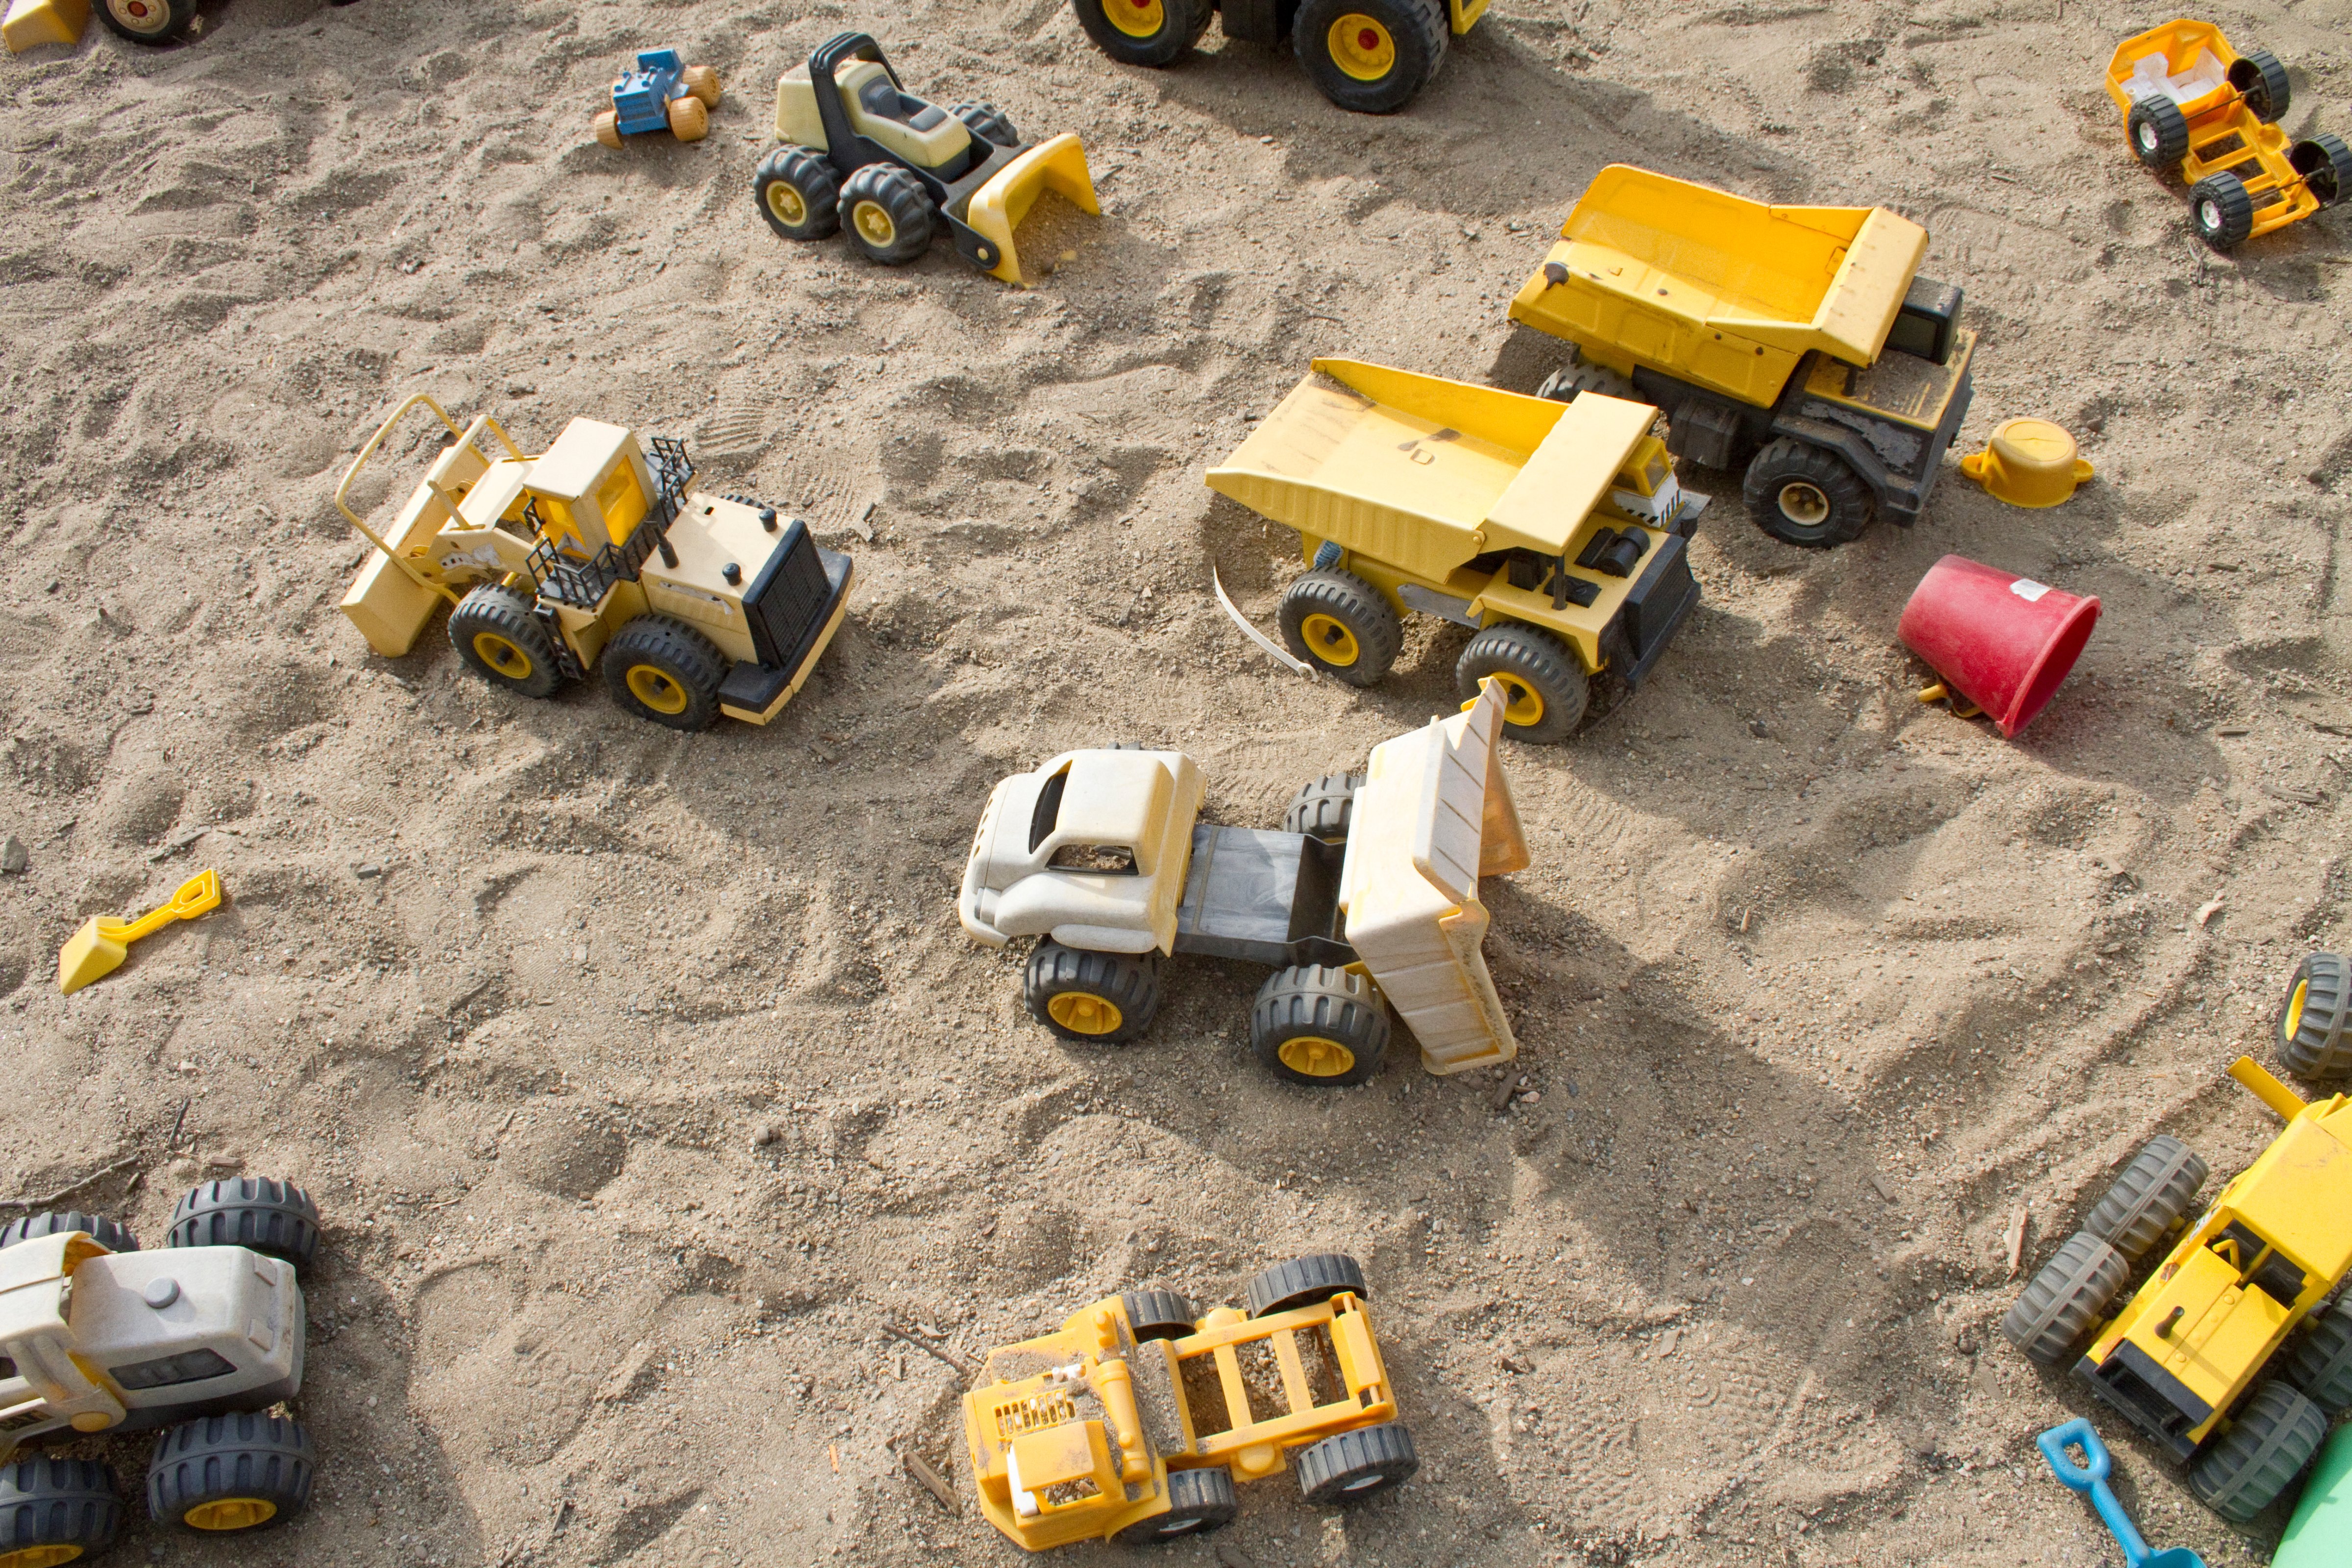 Toy trucks in a sandbox